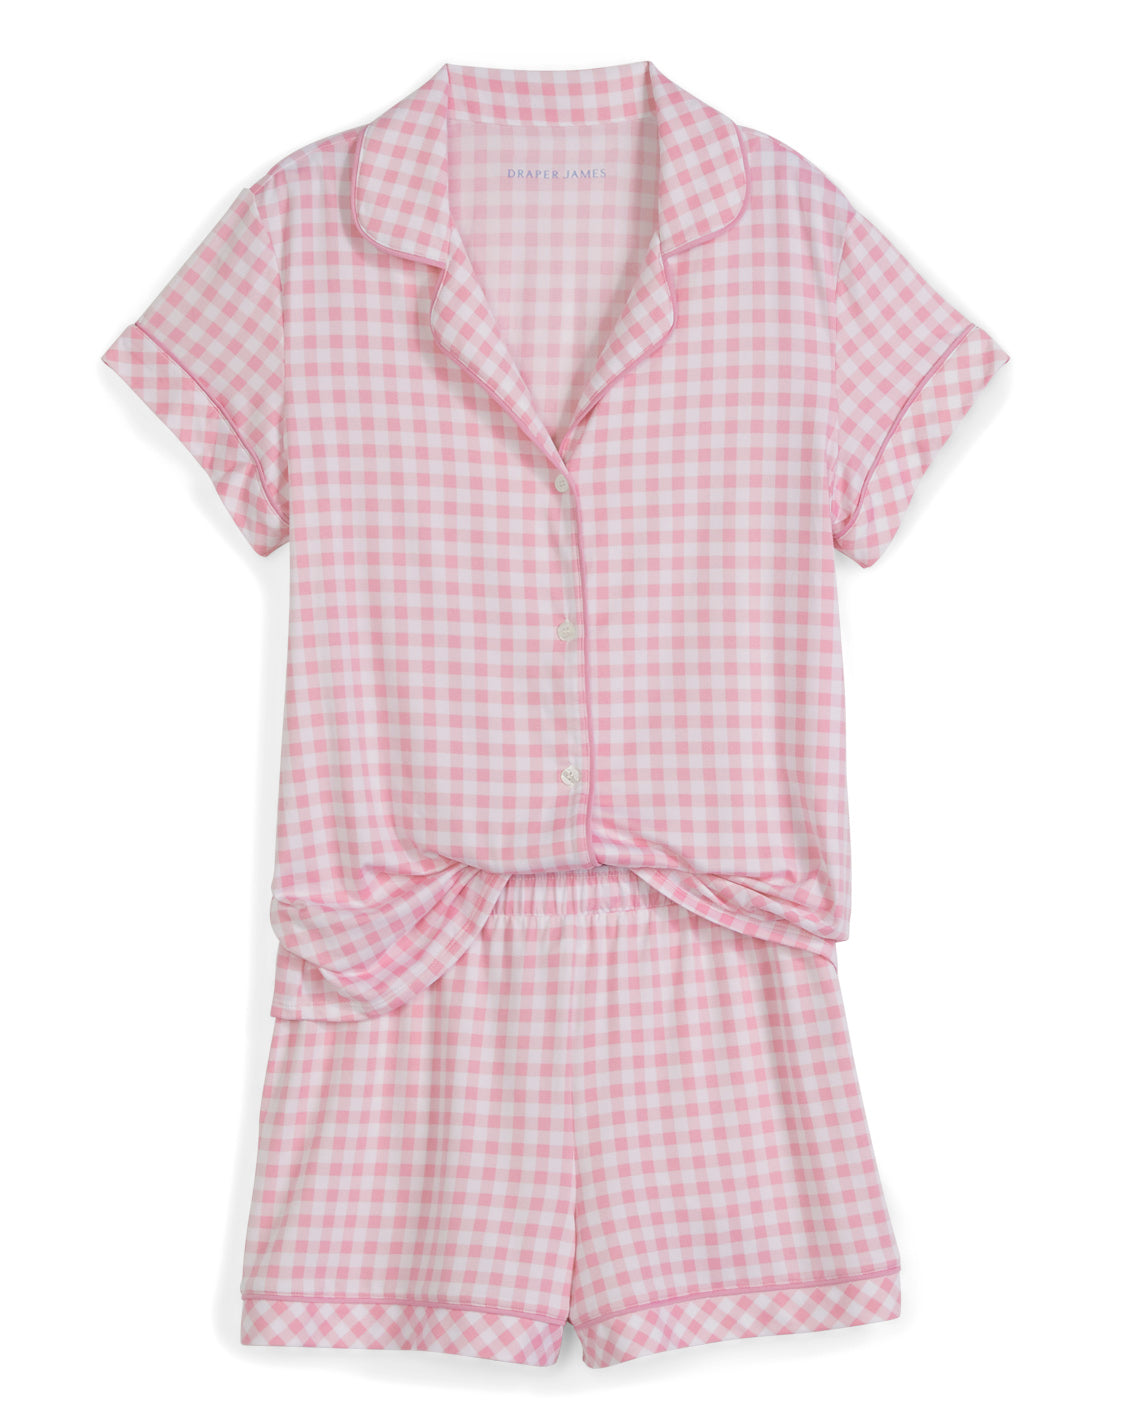 Sara Pajama Set in Light Pink Gingham